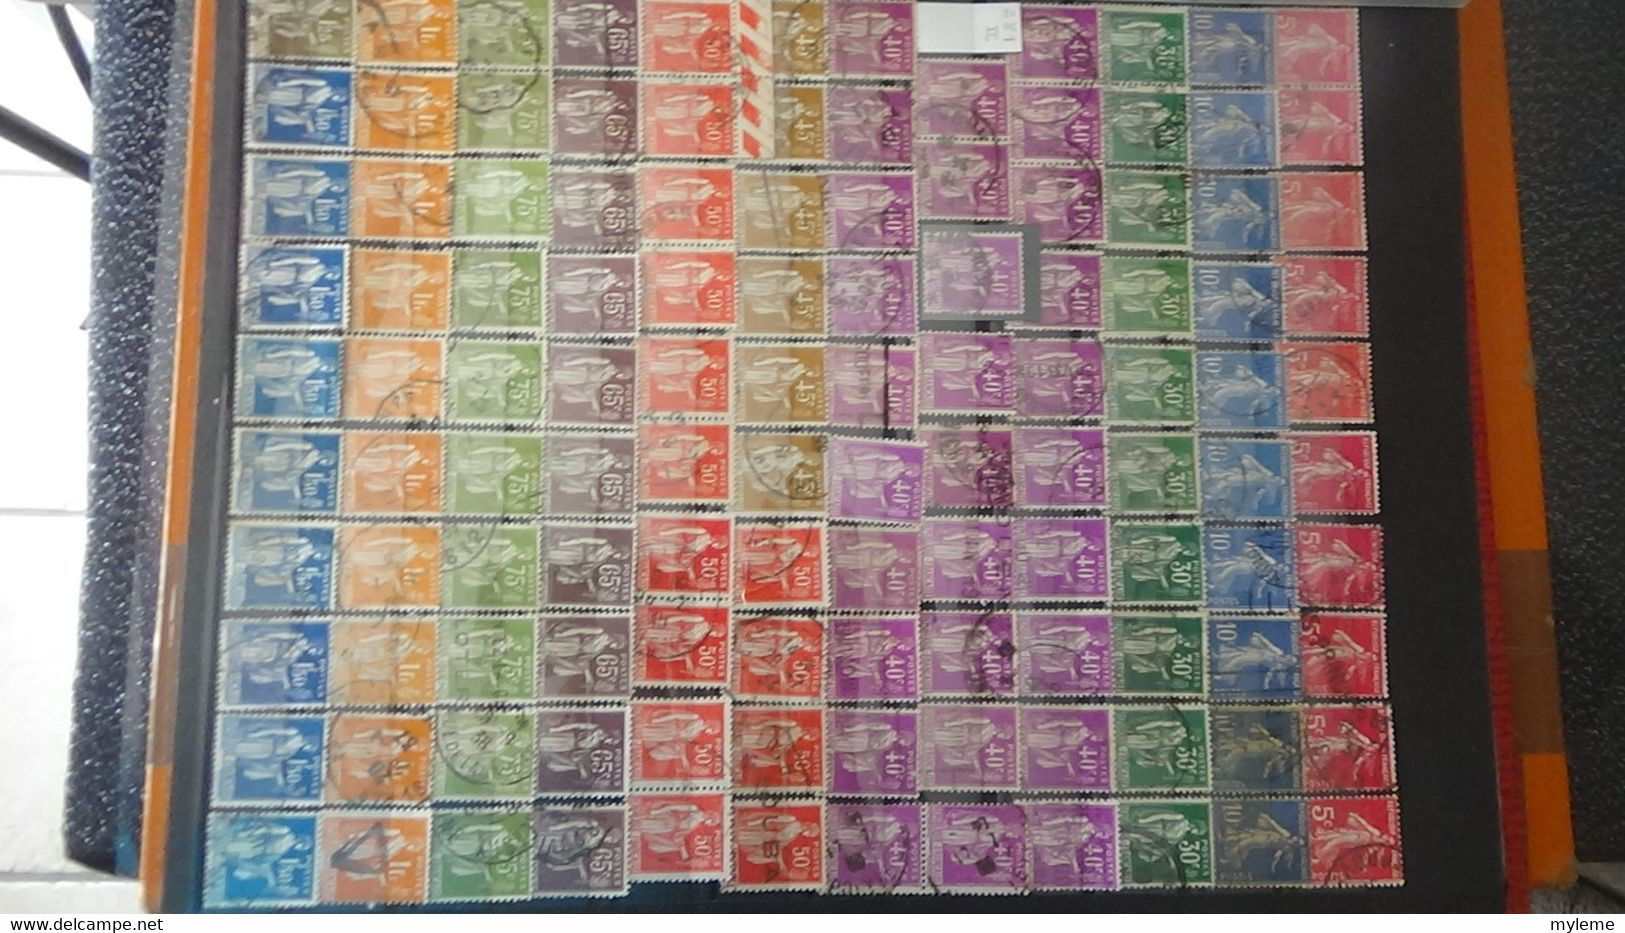 AC270 Collection de France en timbres oblitérés dont bonnes petites valeurs   A saisir !!